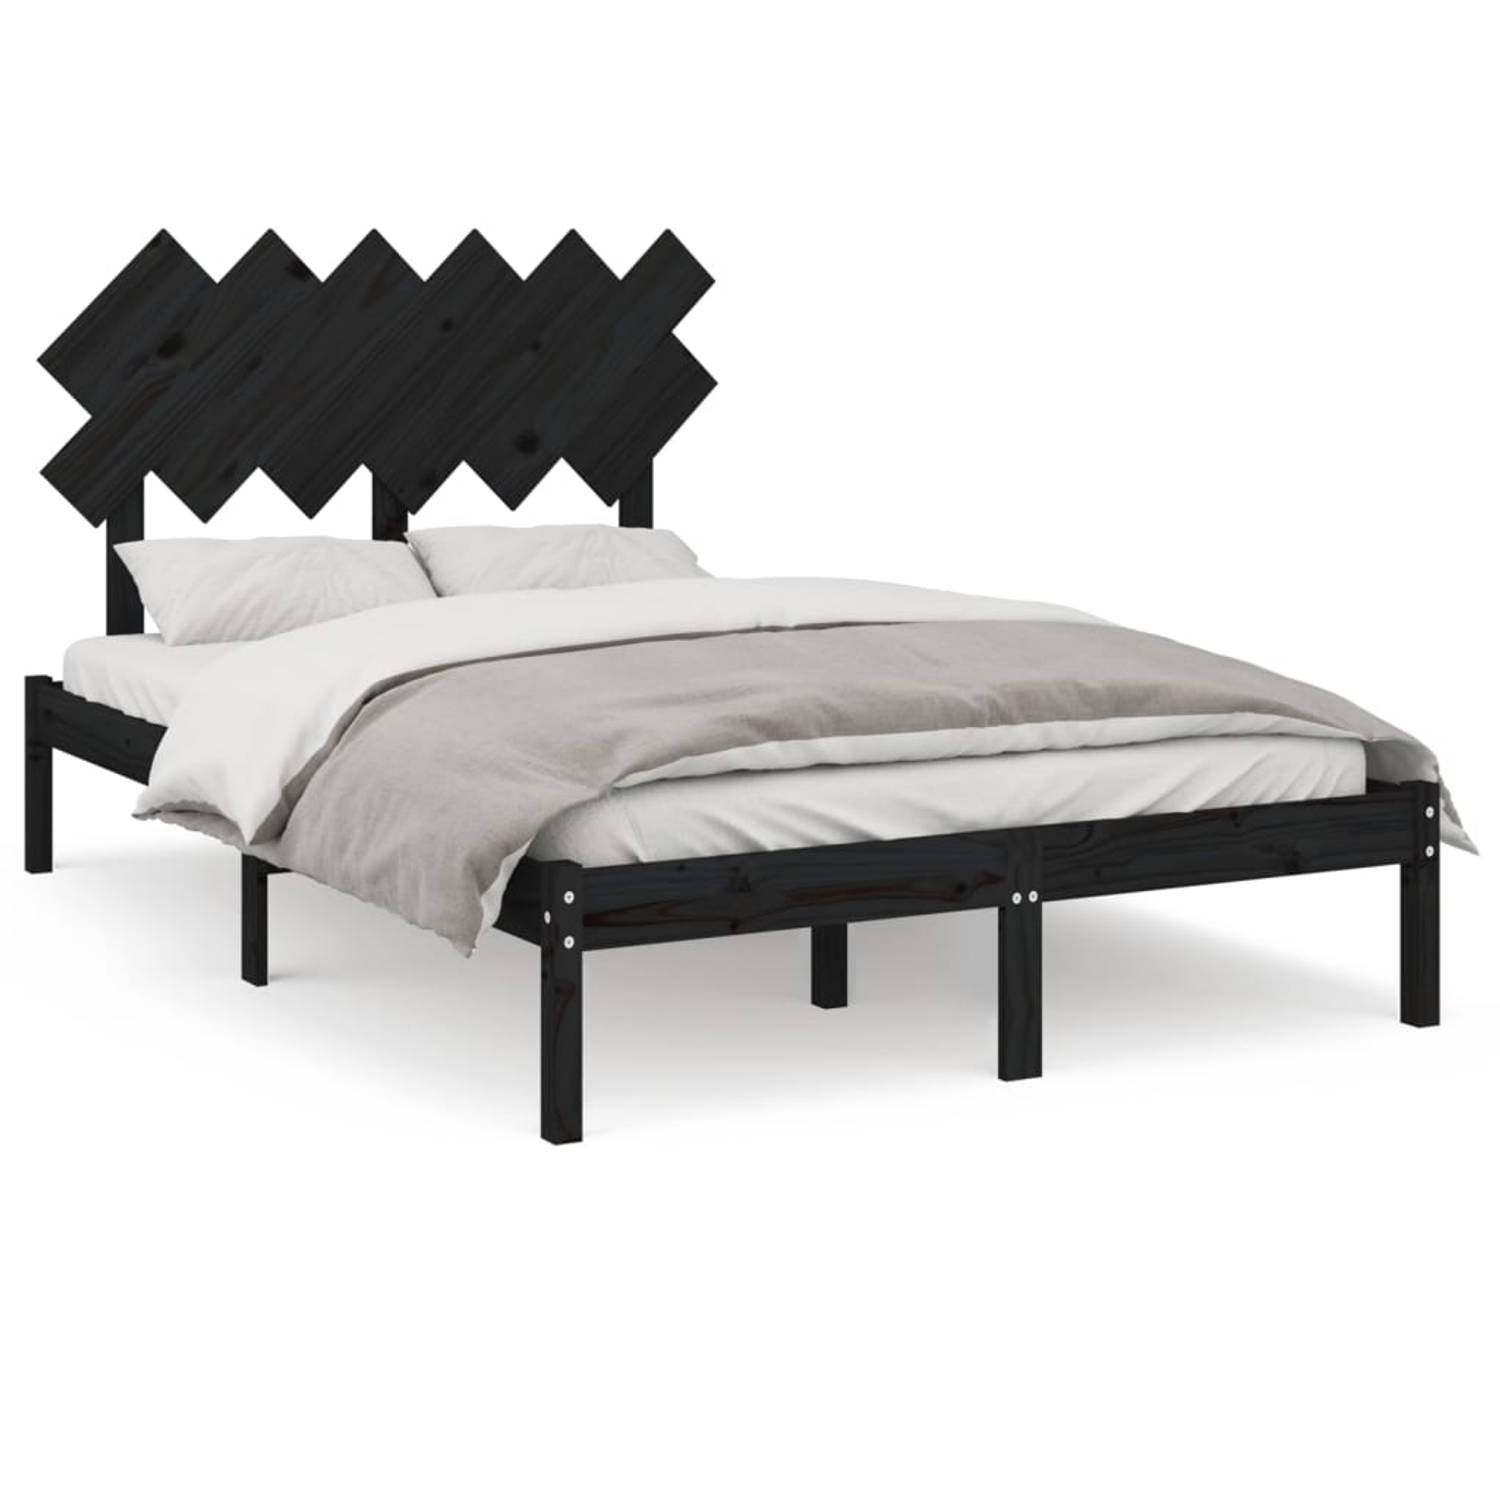 The Living Store Bedframe massief hout zwart 120x200 cm - Bedframe - Bedframes - Bed - Bedbodem - Ledikant - Bed Frame - Massief Houten Bedframe - Slaapmeubel - Tweepersoonsbed - B